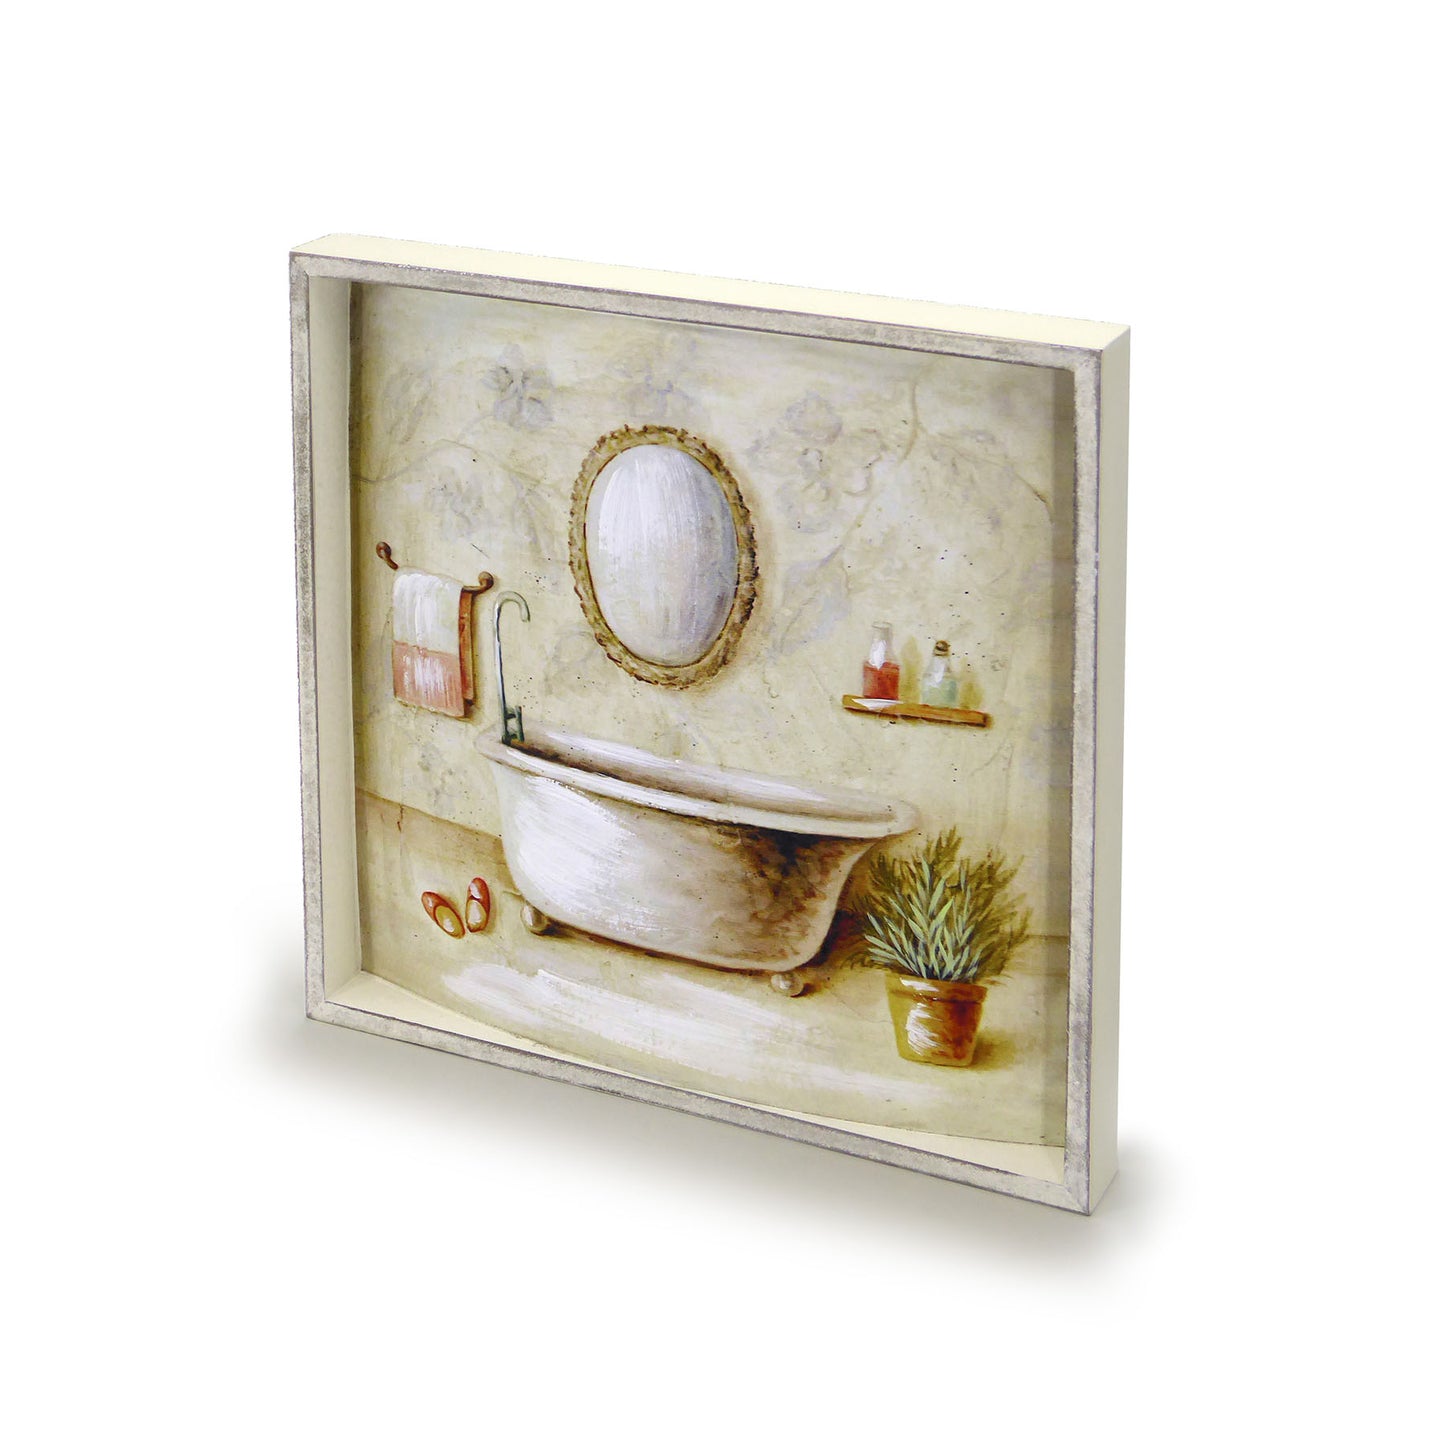 Bild auf Holz gemalt für das Badezimmer Vintage Shabby Chic 32x32 4 Variante